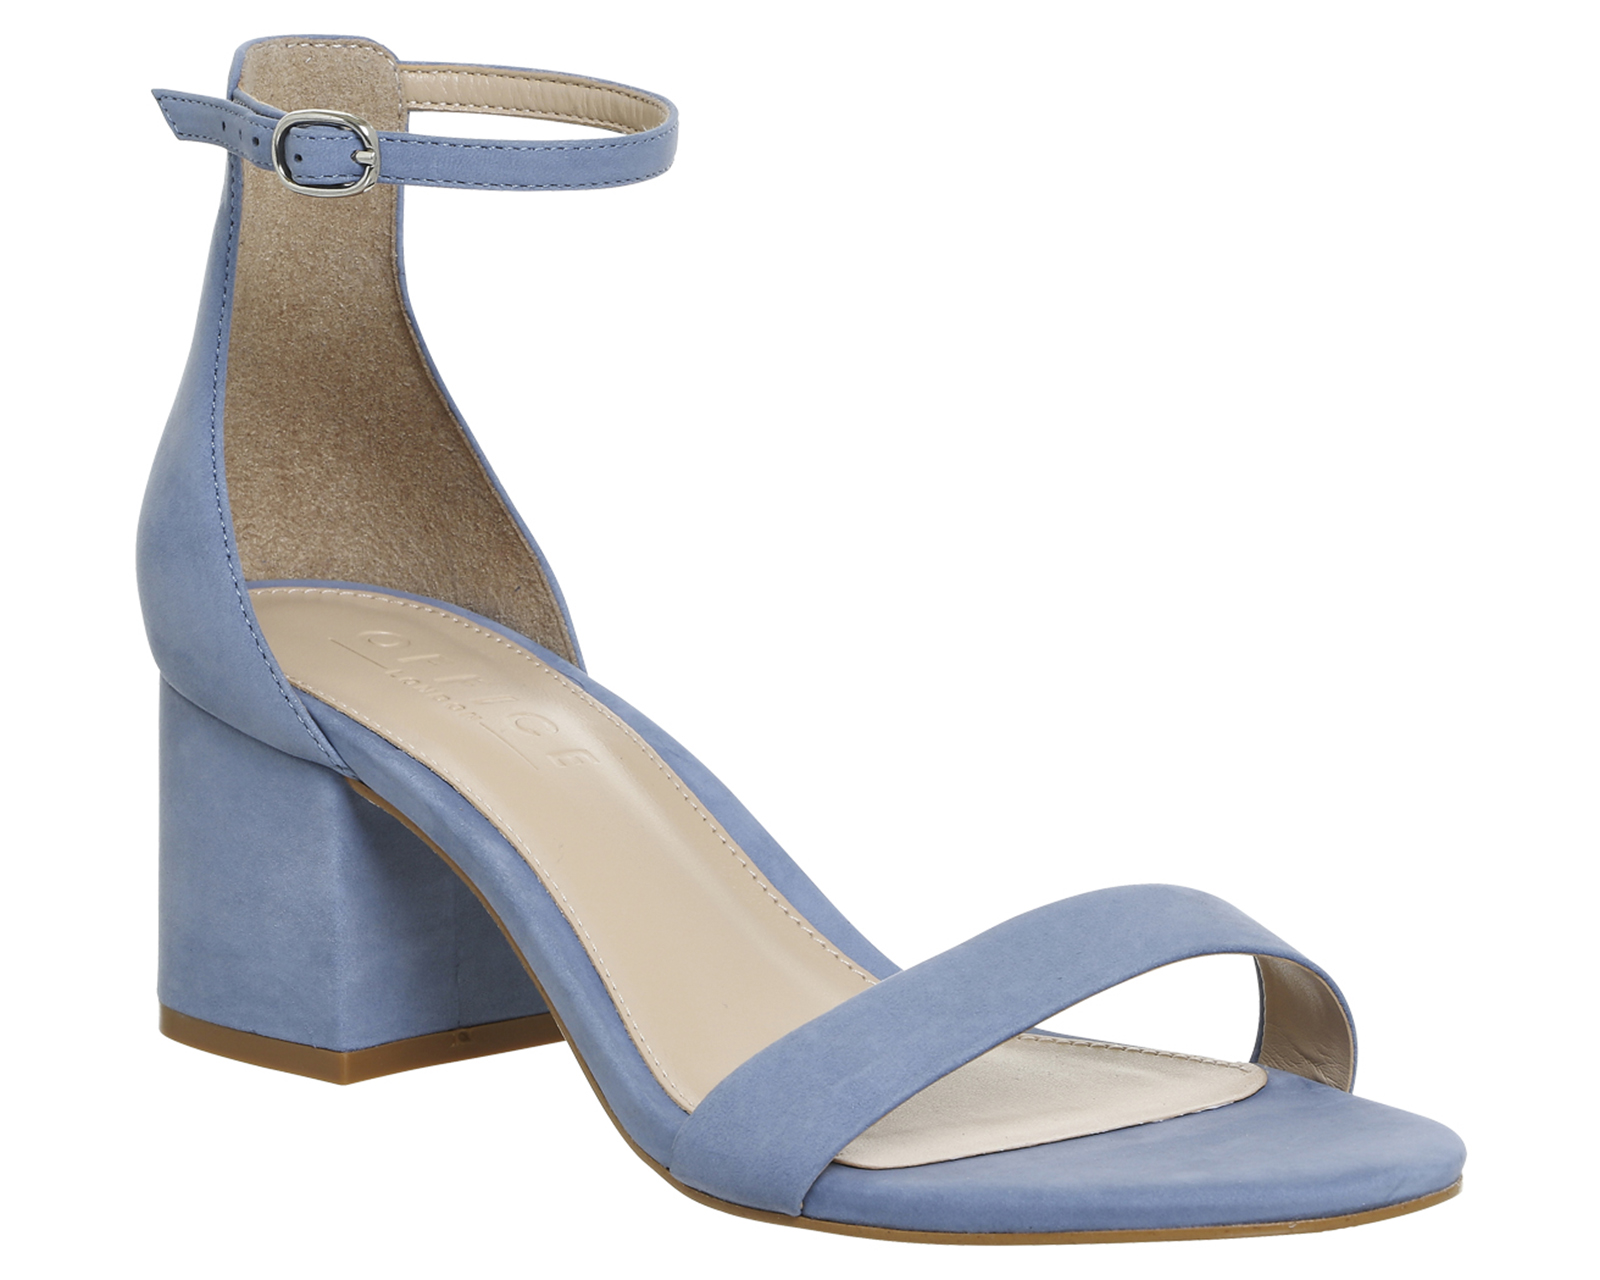 blue block heels